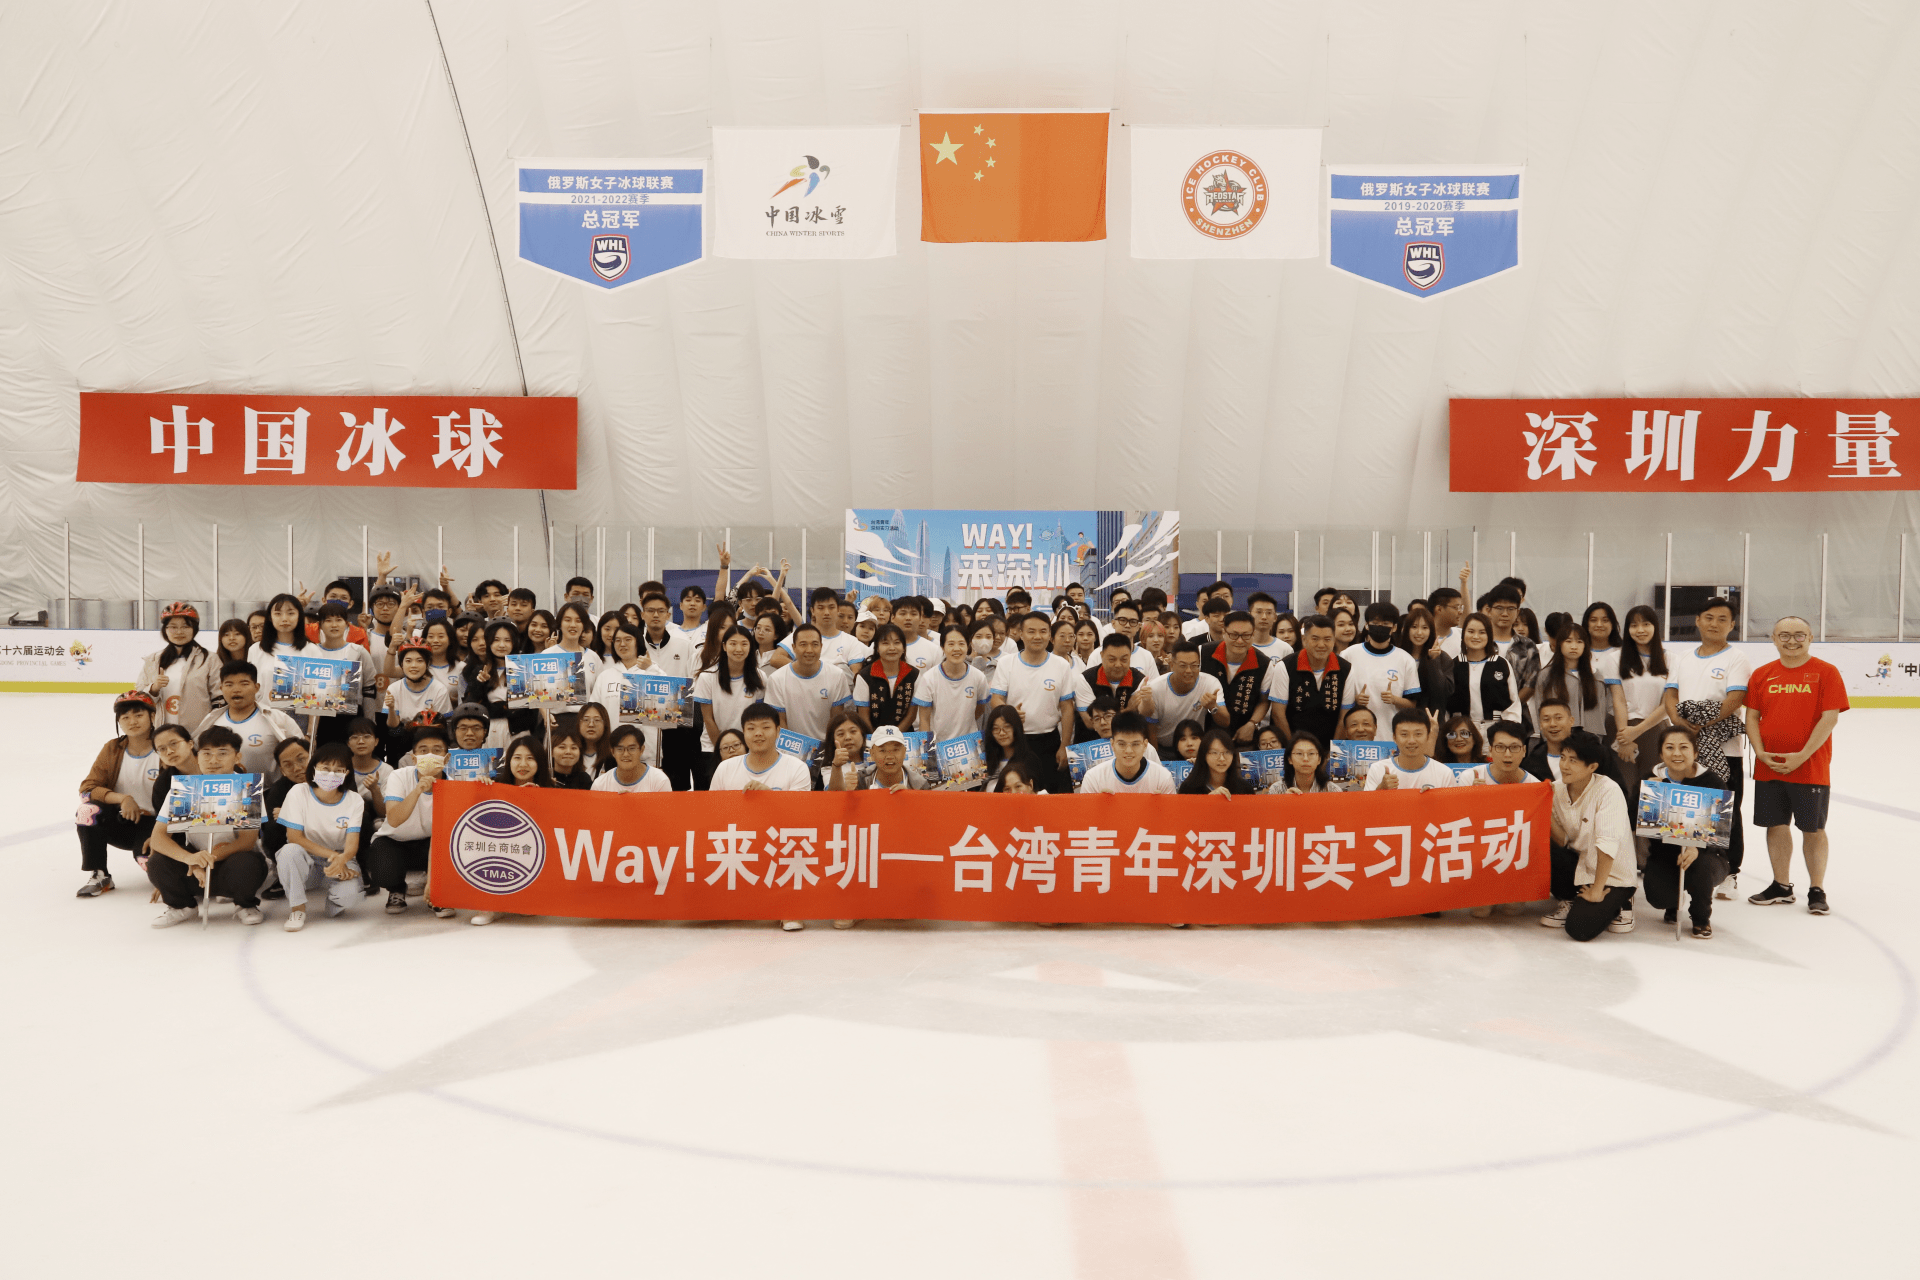 台湾青年首次走进国家队冰球训练基地 体验冰上趣味运动插图